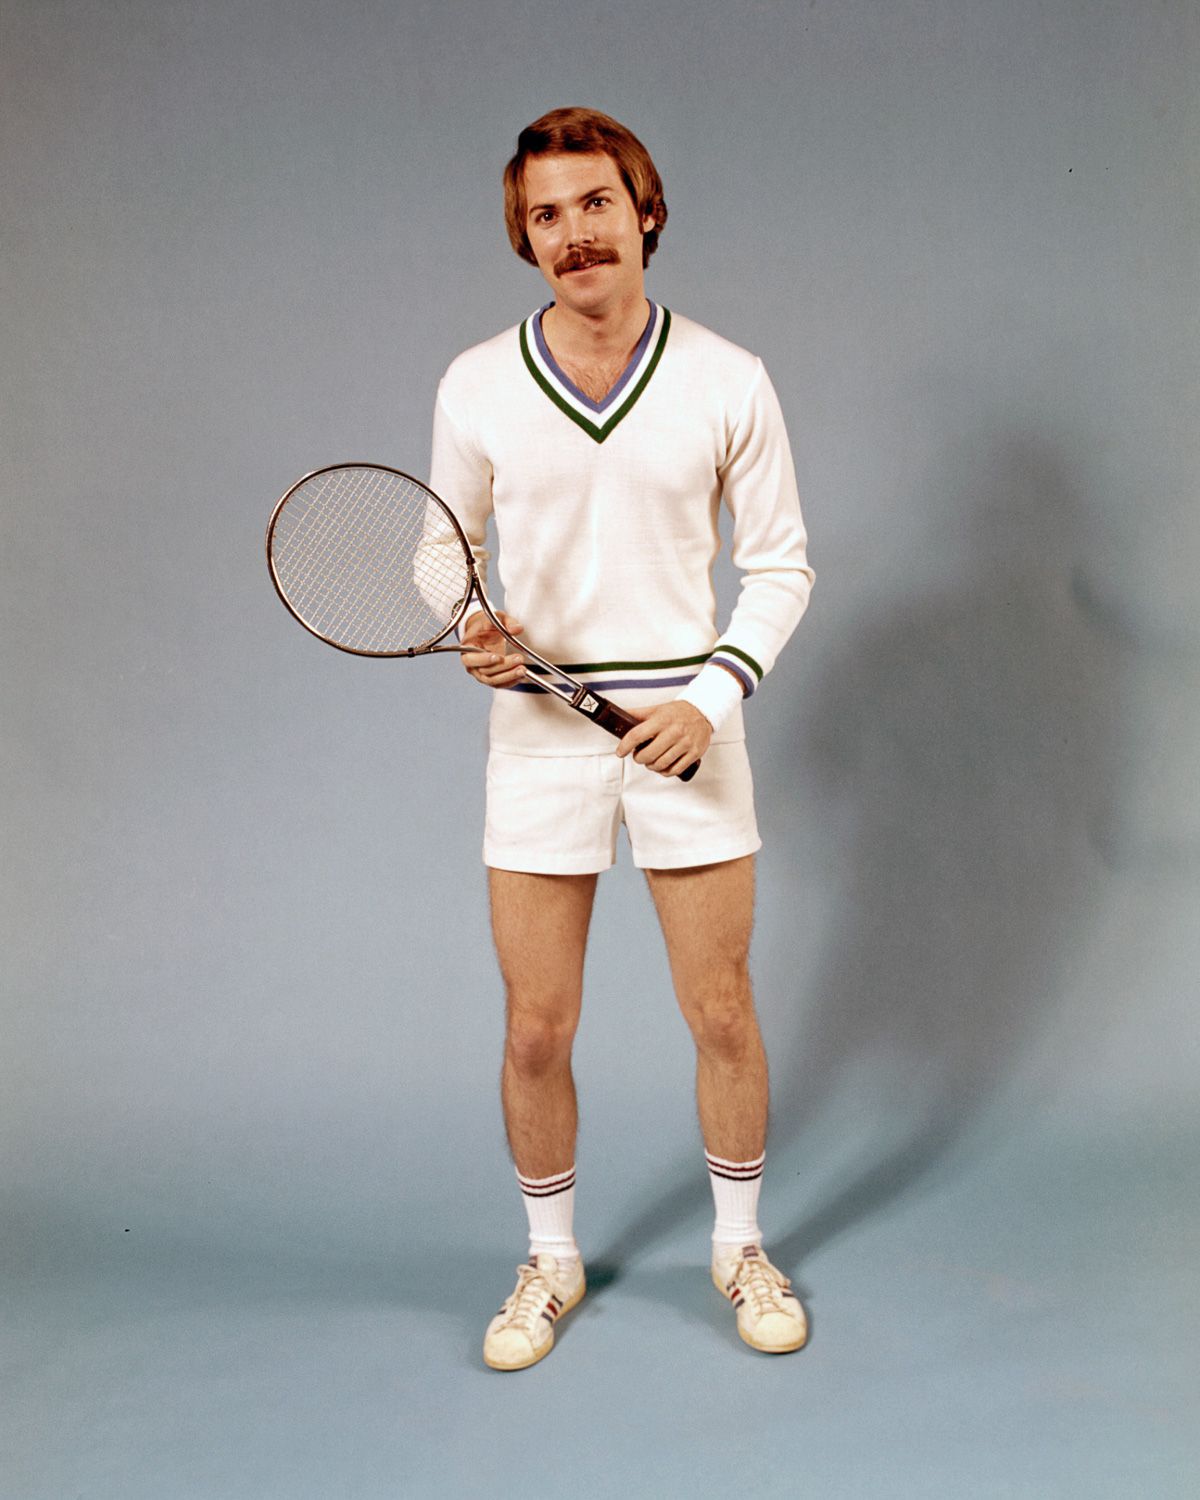 Vent fort Lustre essence tennis 1970 ne pas Équipement femme au foyer